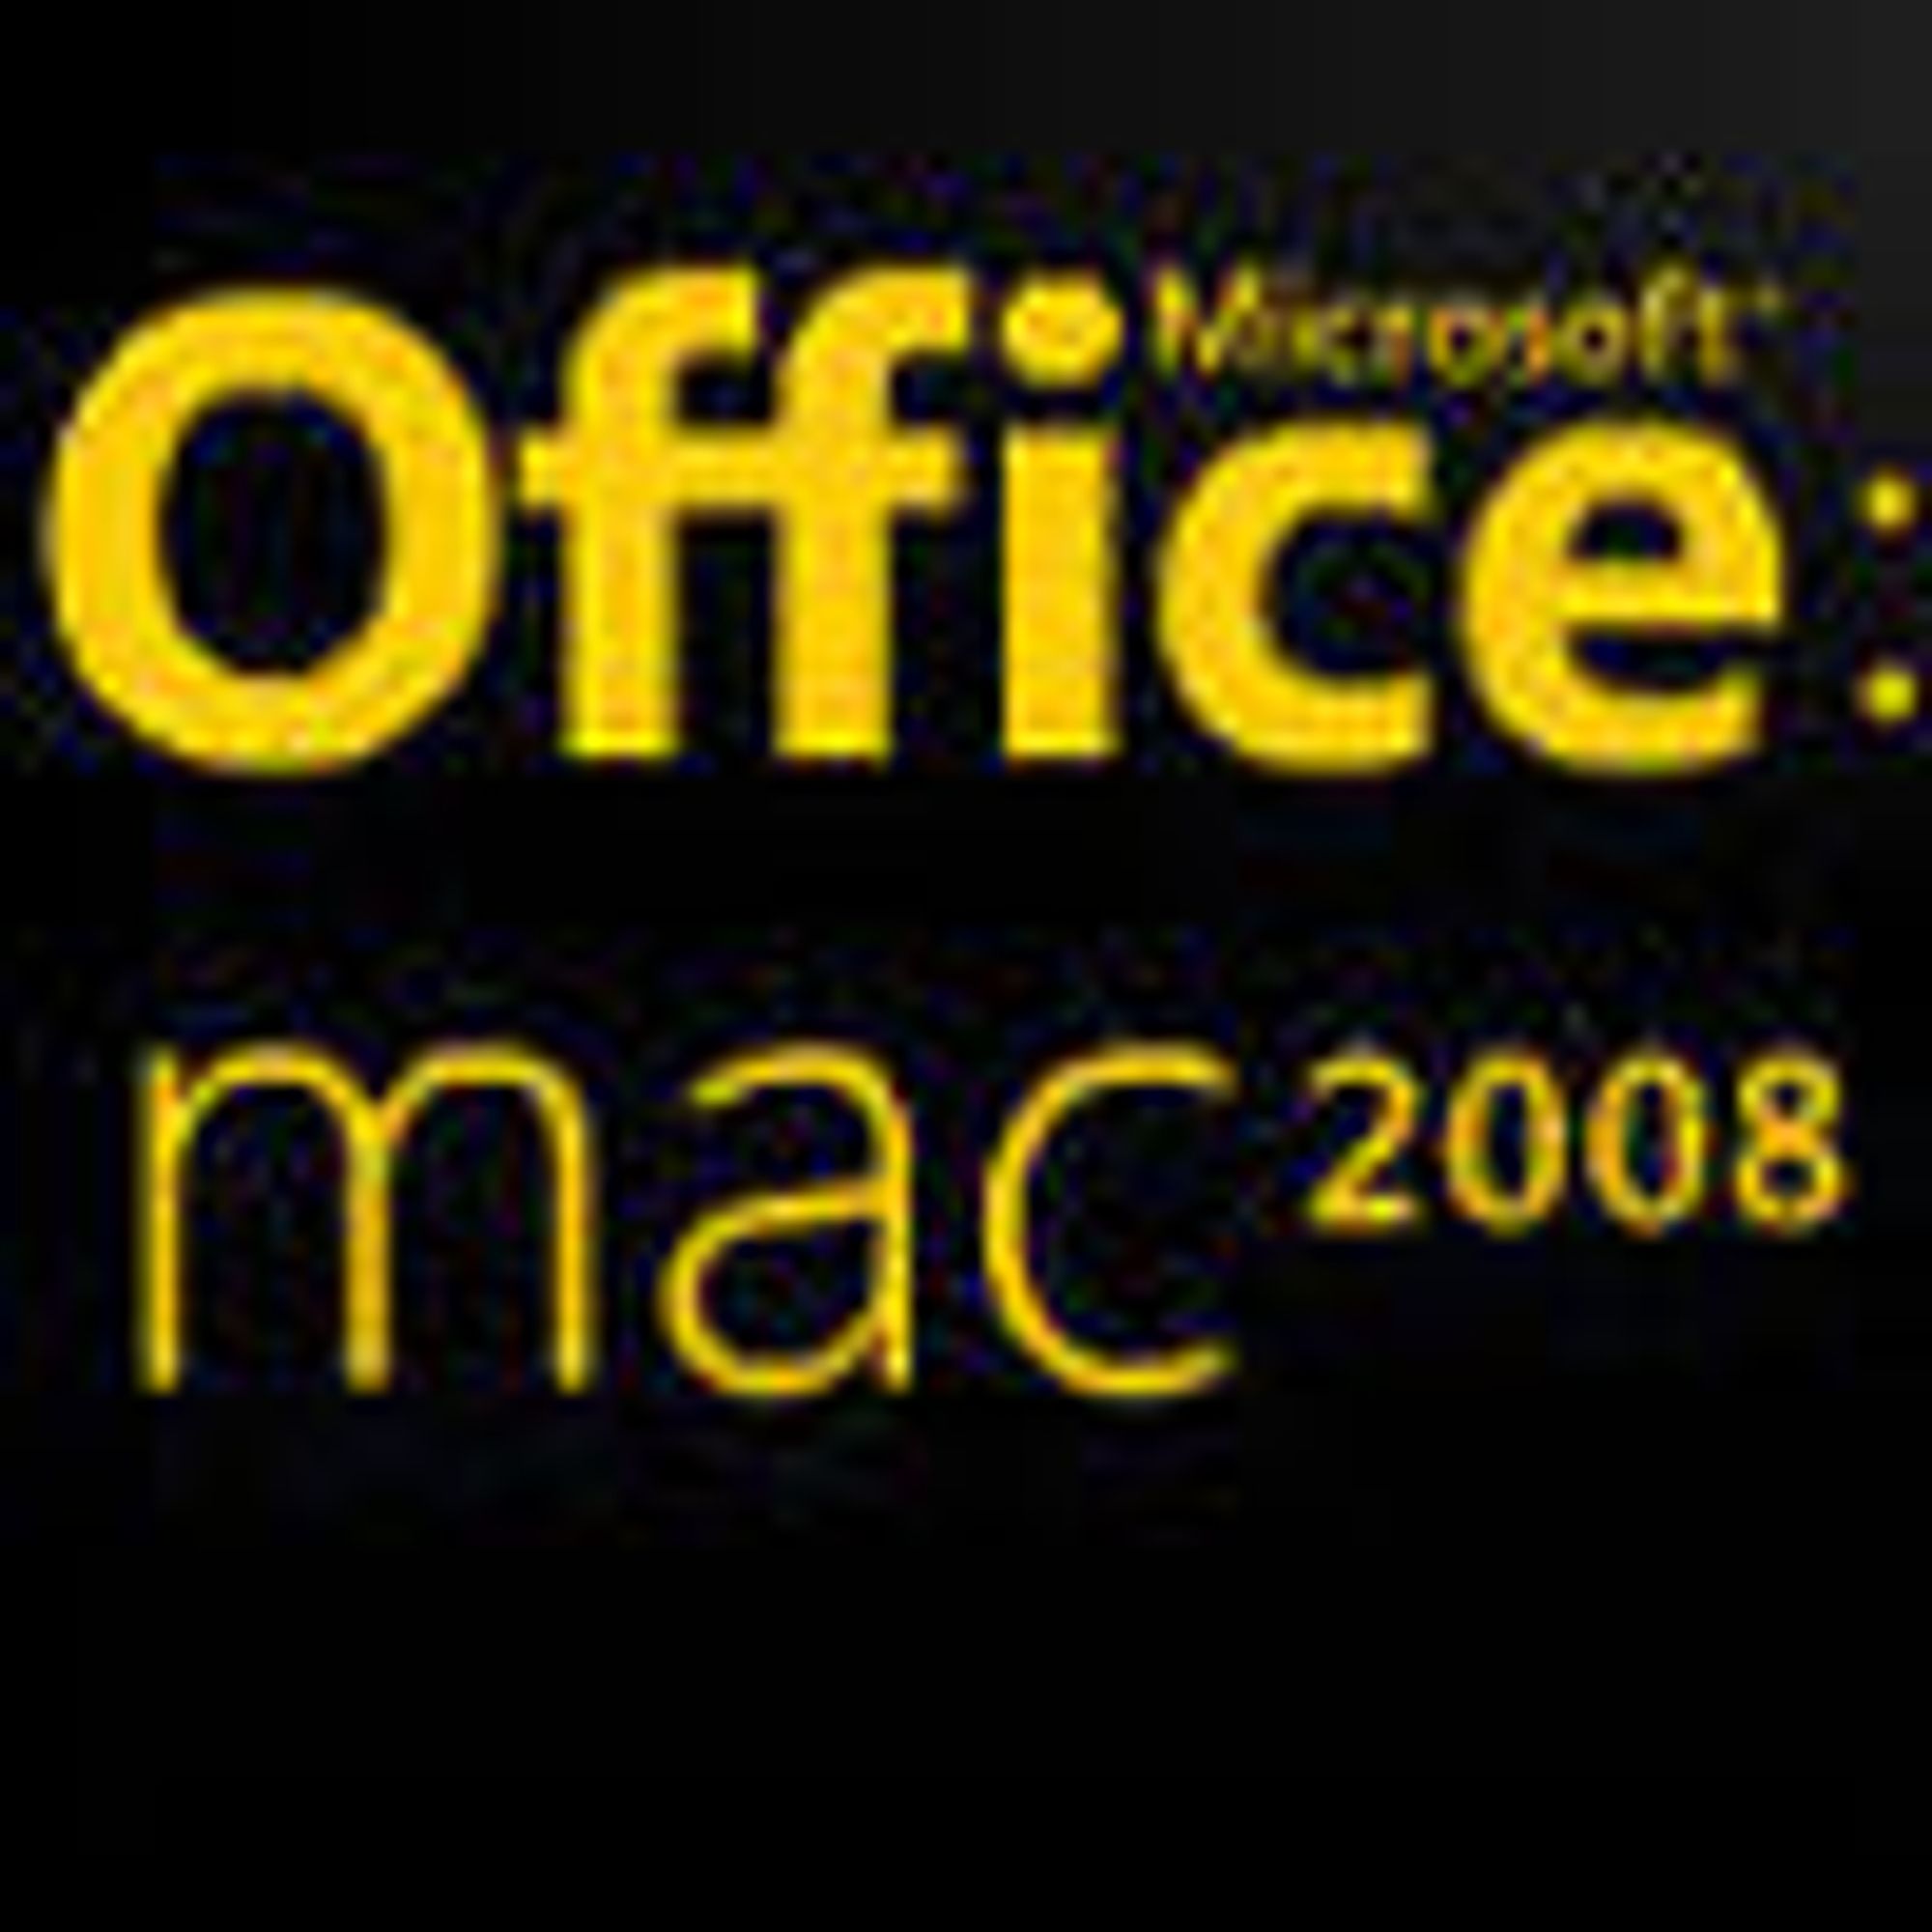 Office 2008 for Mac lanseres om få måneder